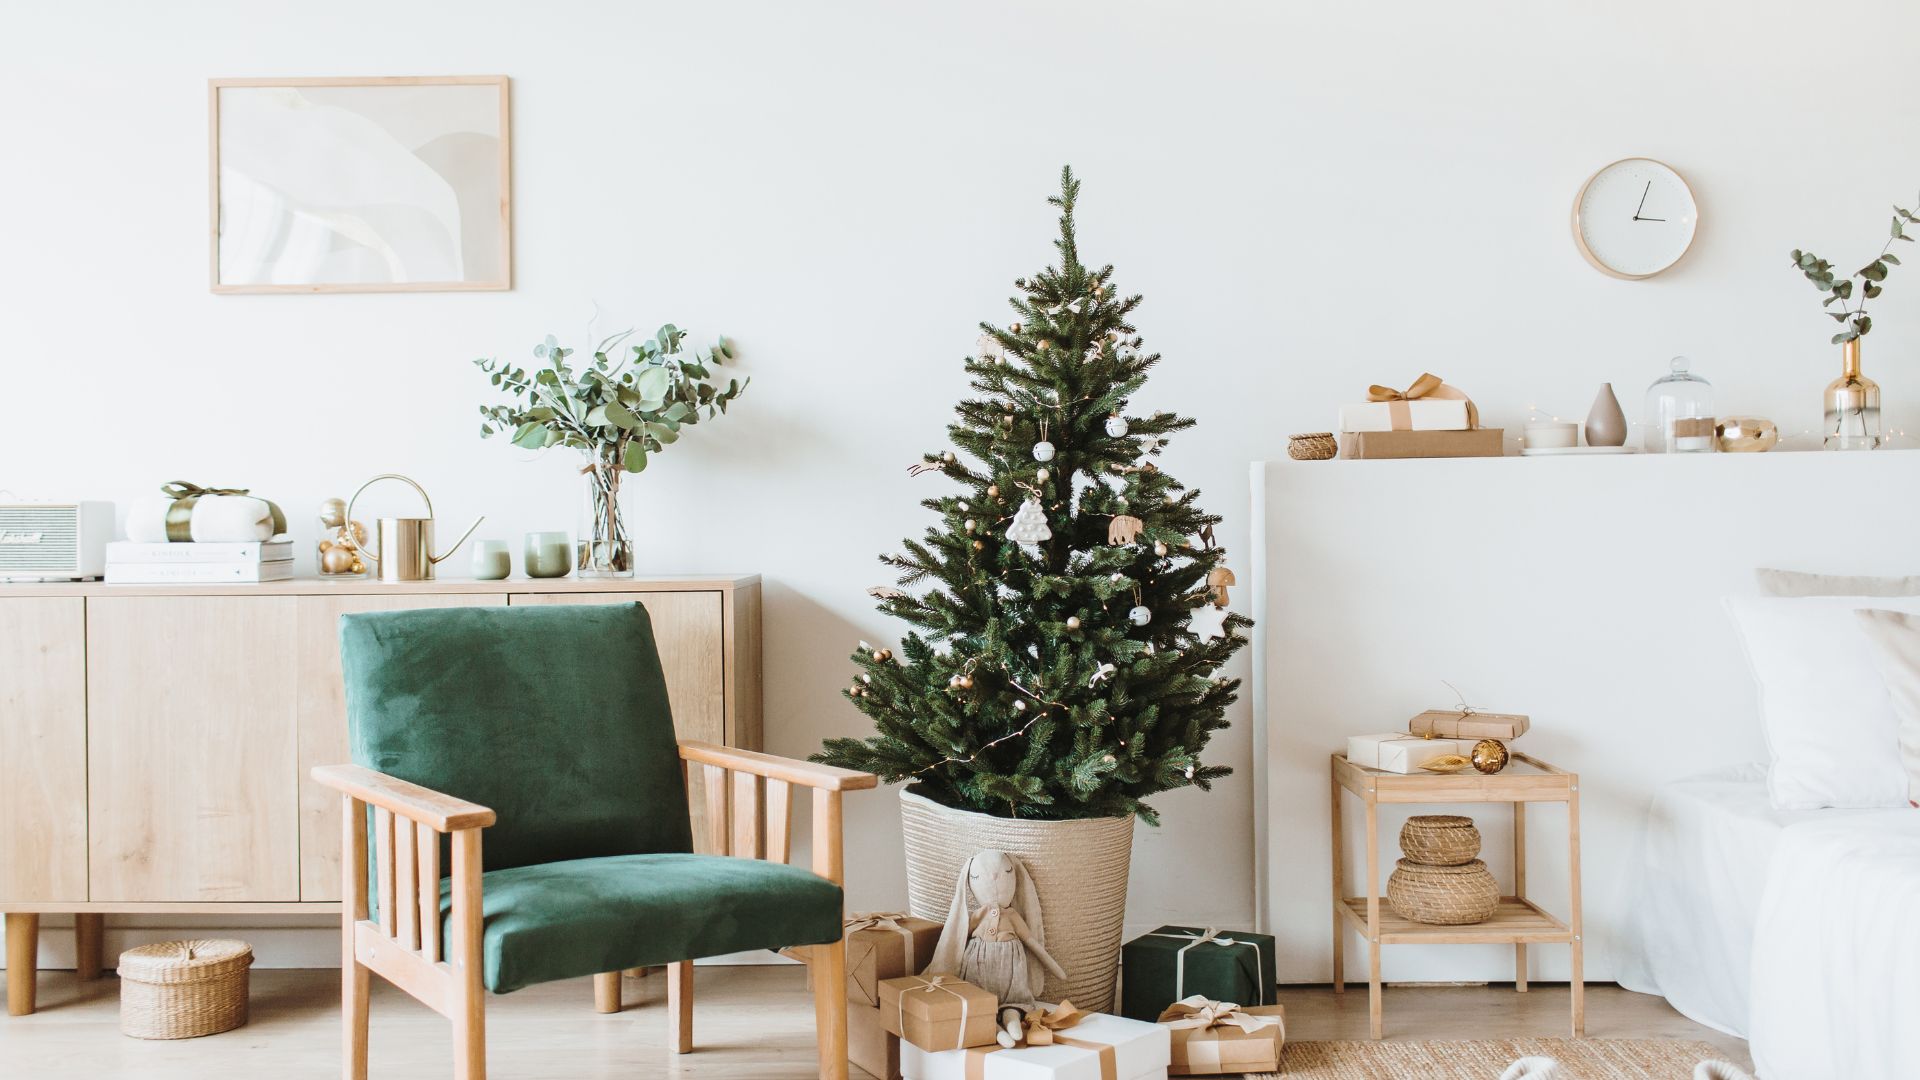 Imagem de fundo branco com vários elementos decorativos de natal, em tons de verde e palha, como: árvore, presentes, cadeira e arranjos florais.